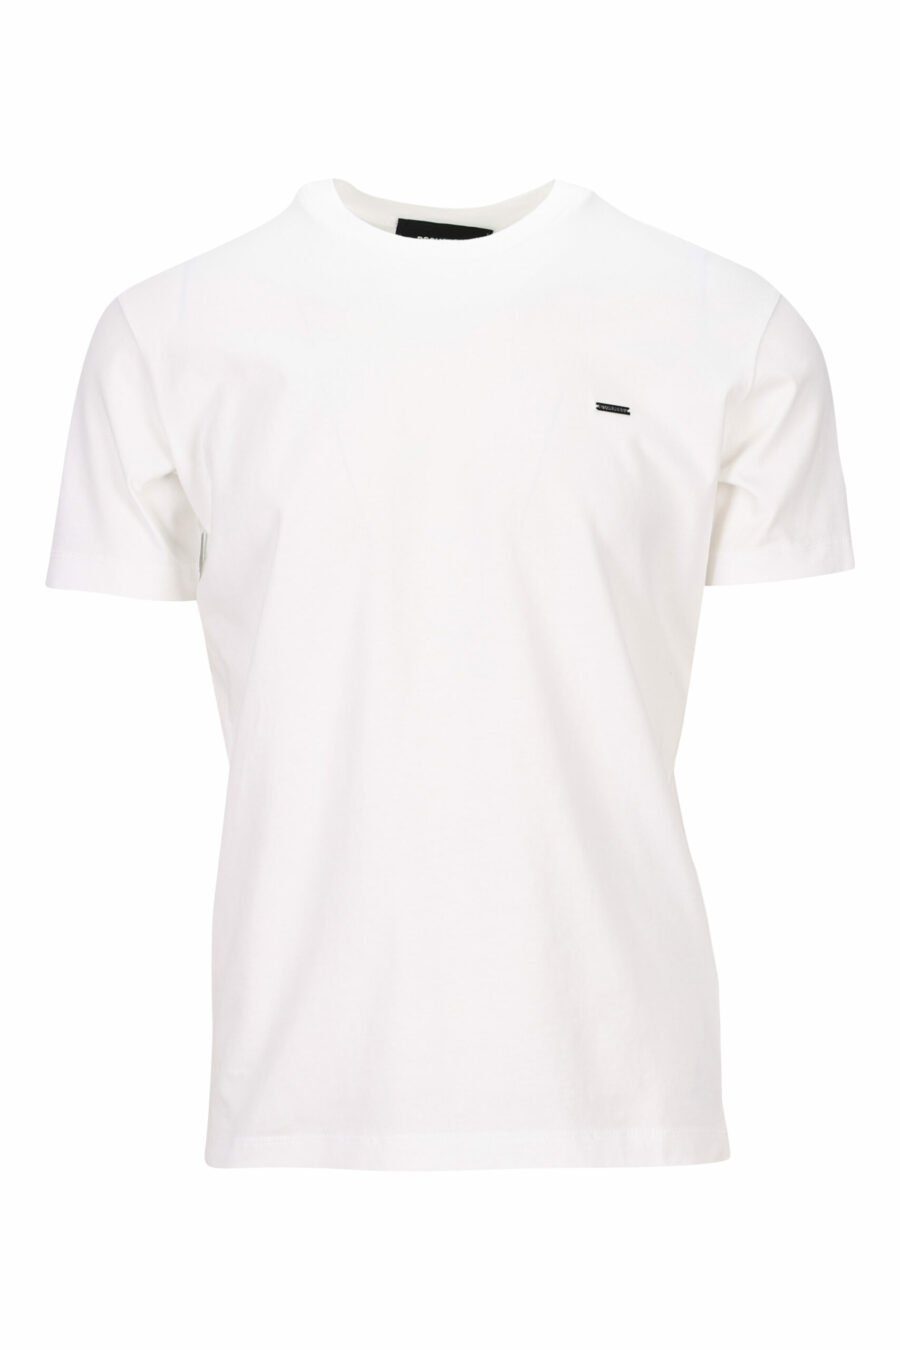 Weißes T-Shirt mit Logo auf kleinem Teller - 8054148404369 skaliert